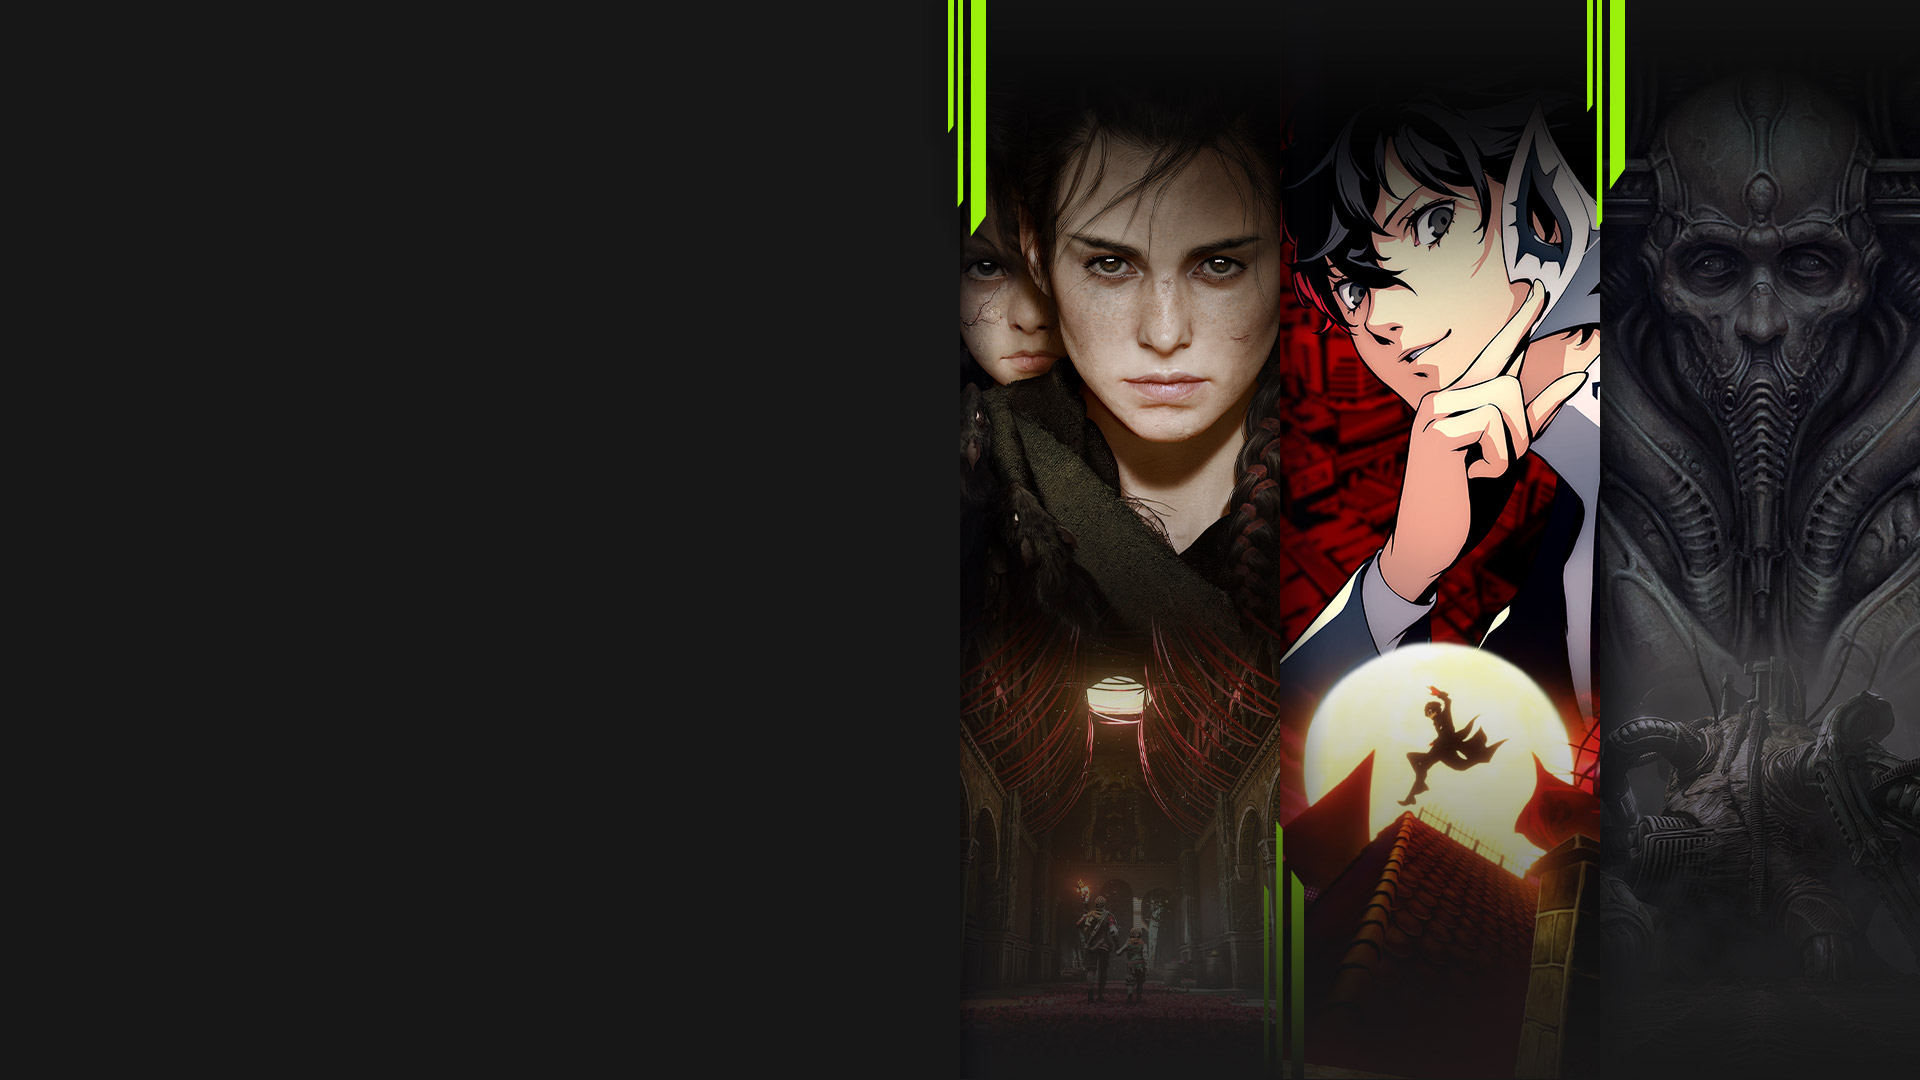 Image de plusieurs jeux disponibles avec Xbox Game Pass maintenant, y compris A Plague Tale: Requiem, Persona 5 Royal, Scorn et Chivalry 2